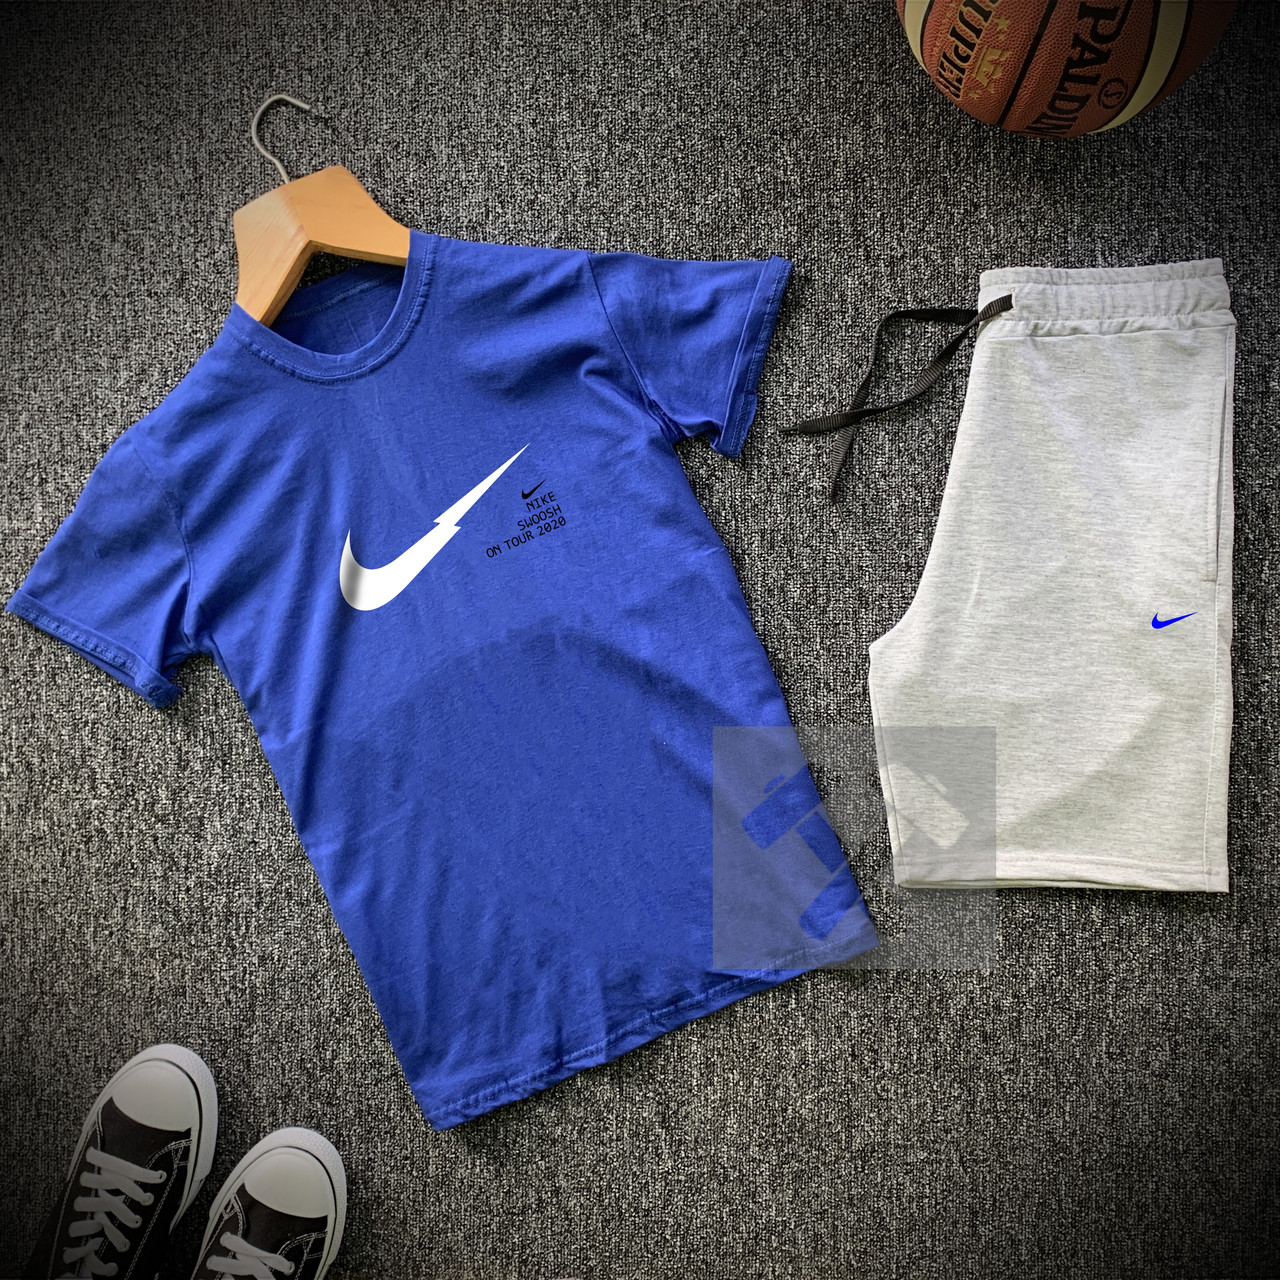 Літній чоловічий спортивний костюм Найк сіро-синього кольору (Шорти й футболка Найк) розміри: 44-54